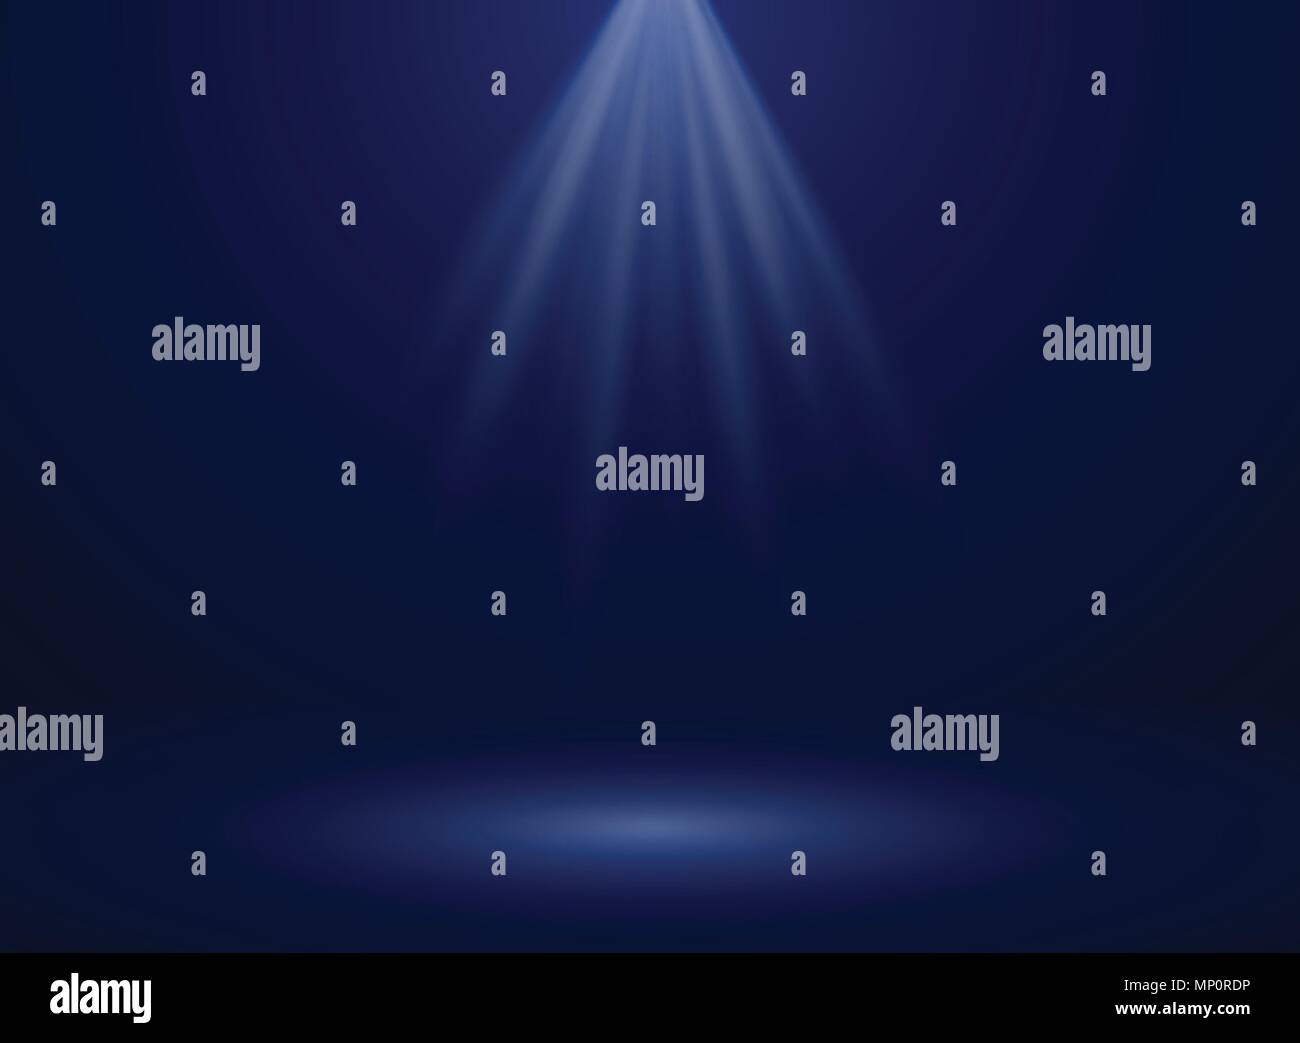 Zusammenfassung von Spotlight Präsentation auf dunkelblauem Hintergrund Farbverlauf, Illustration Vector EPS 10. Stock Vektor